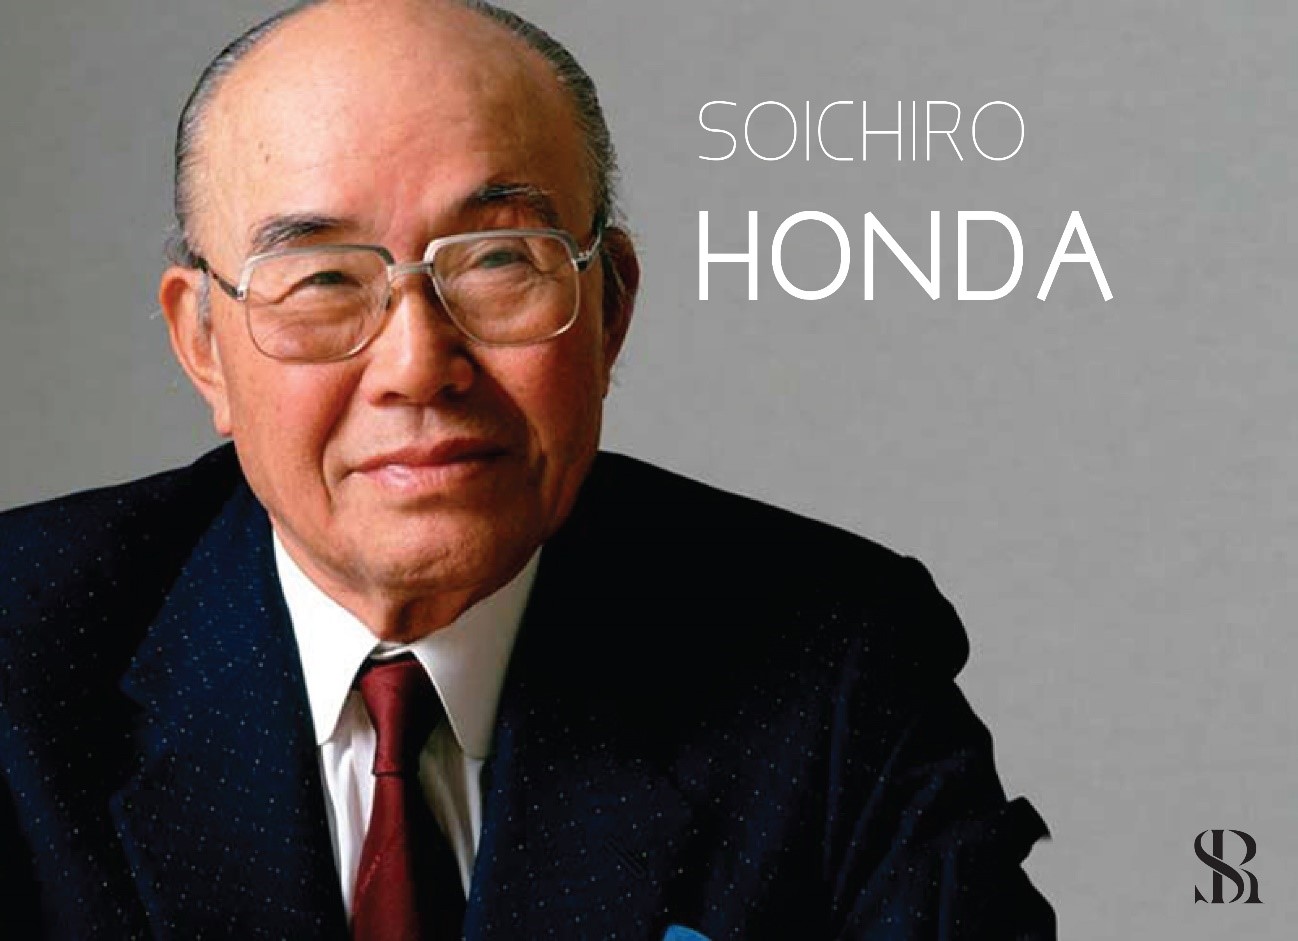 Soichro Honda